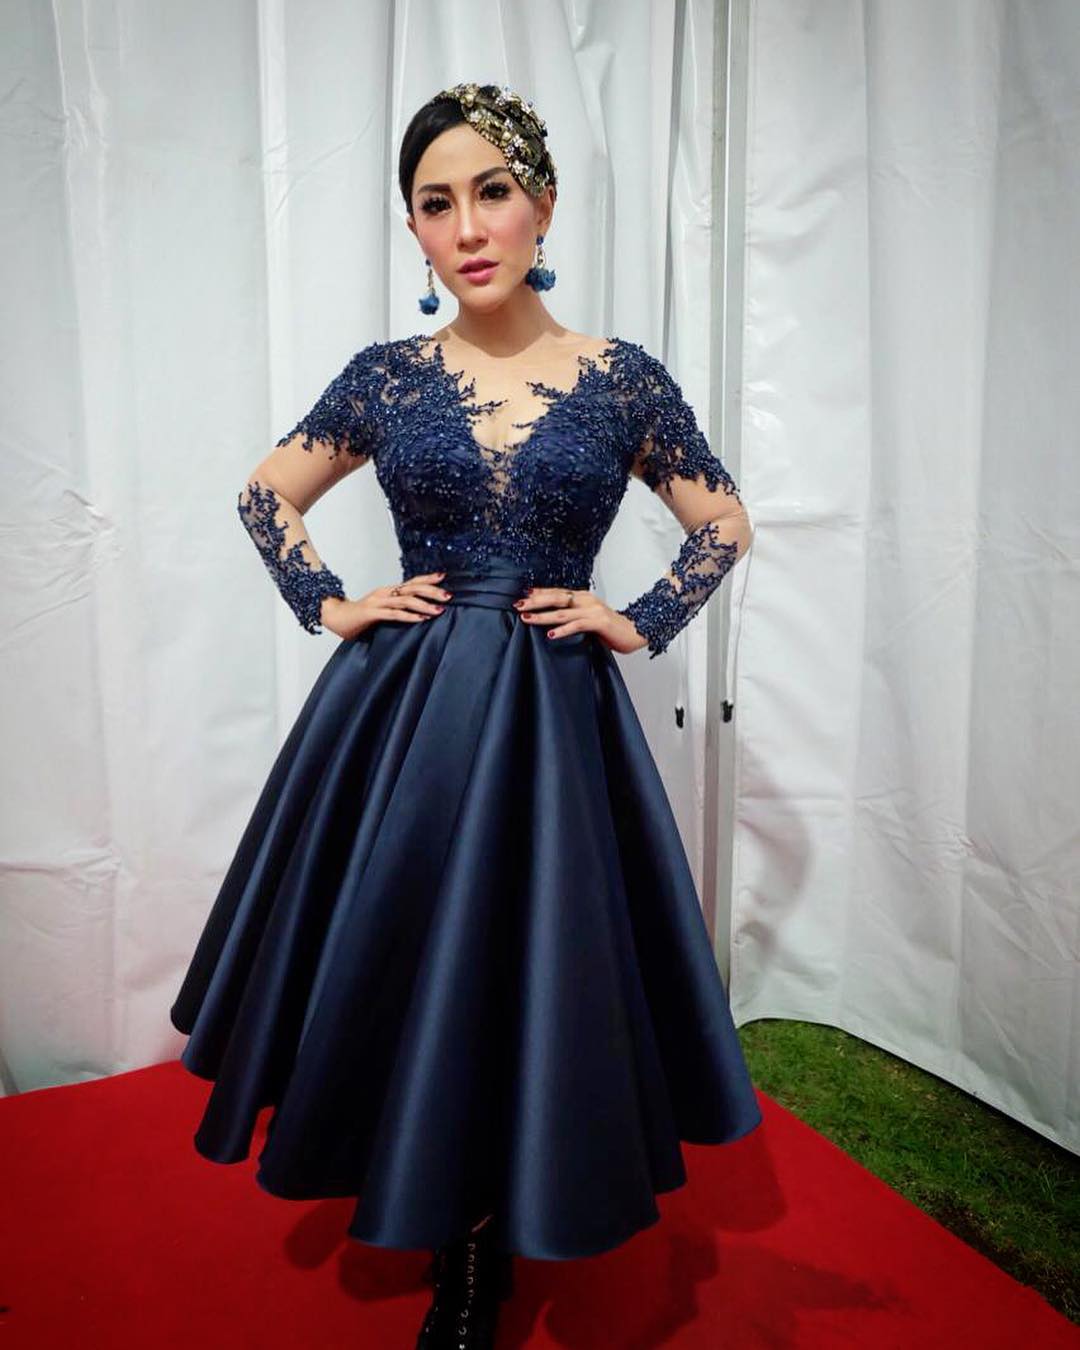 Biodata,Profil dan Fakta Penyanyi Dangdut dari X Factor